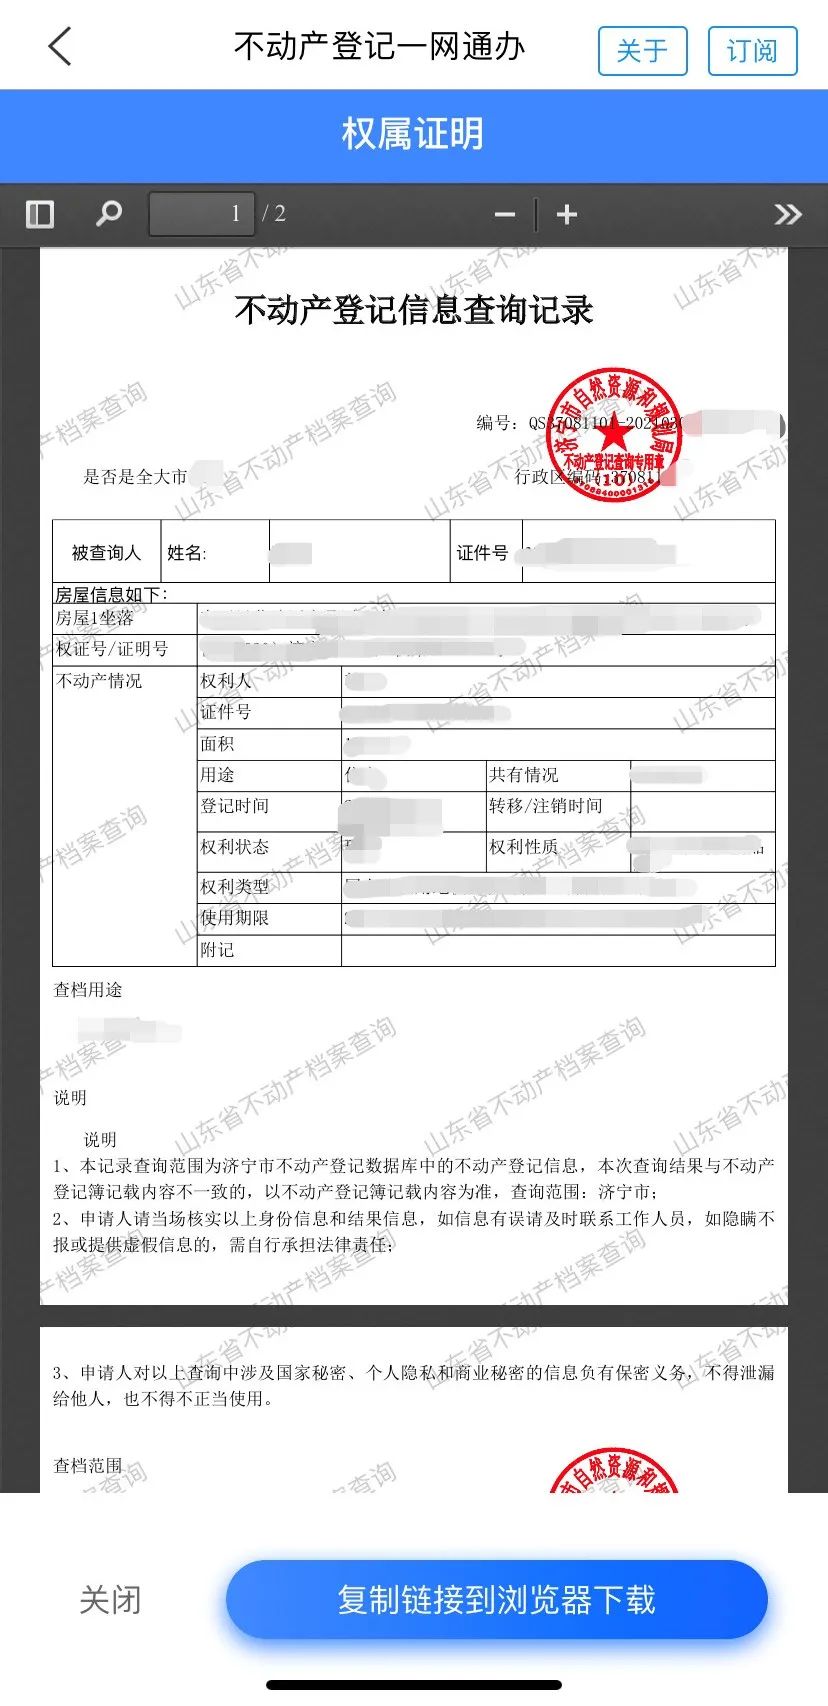 更便捷!济宁市不动产登记中心启用电子印章